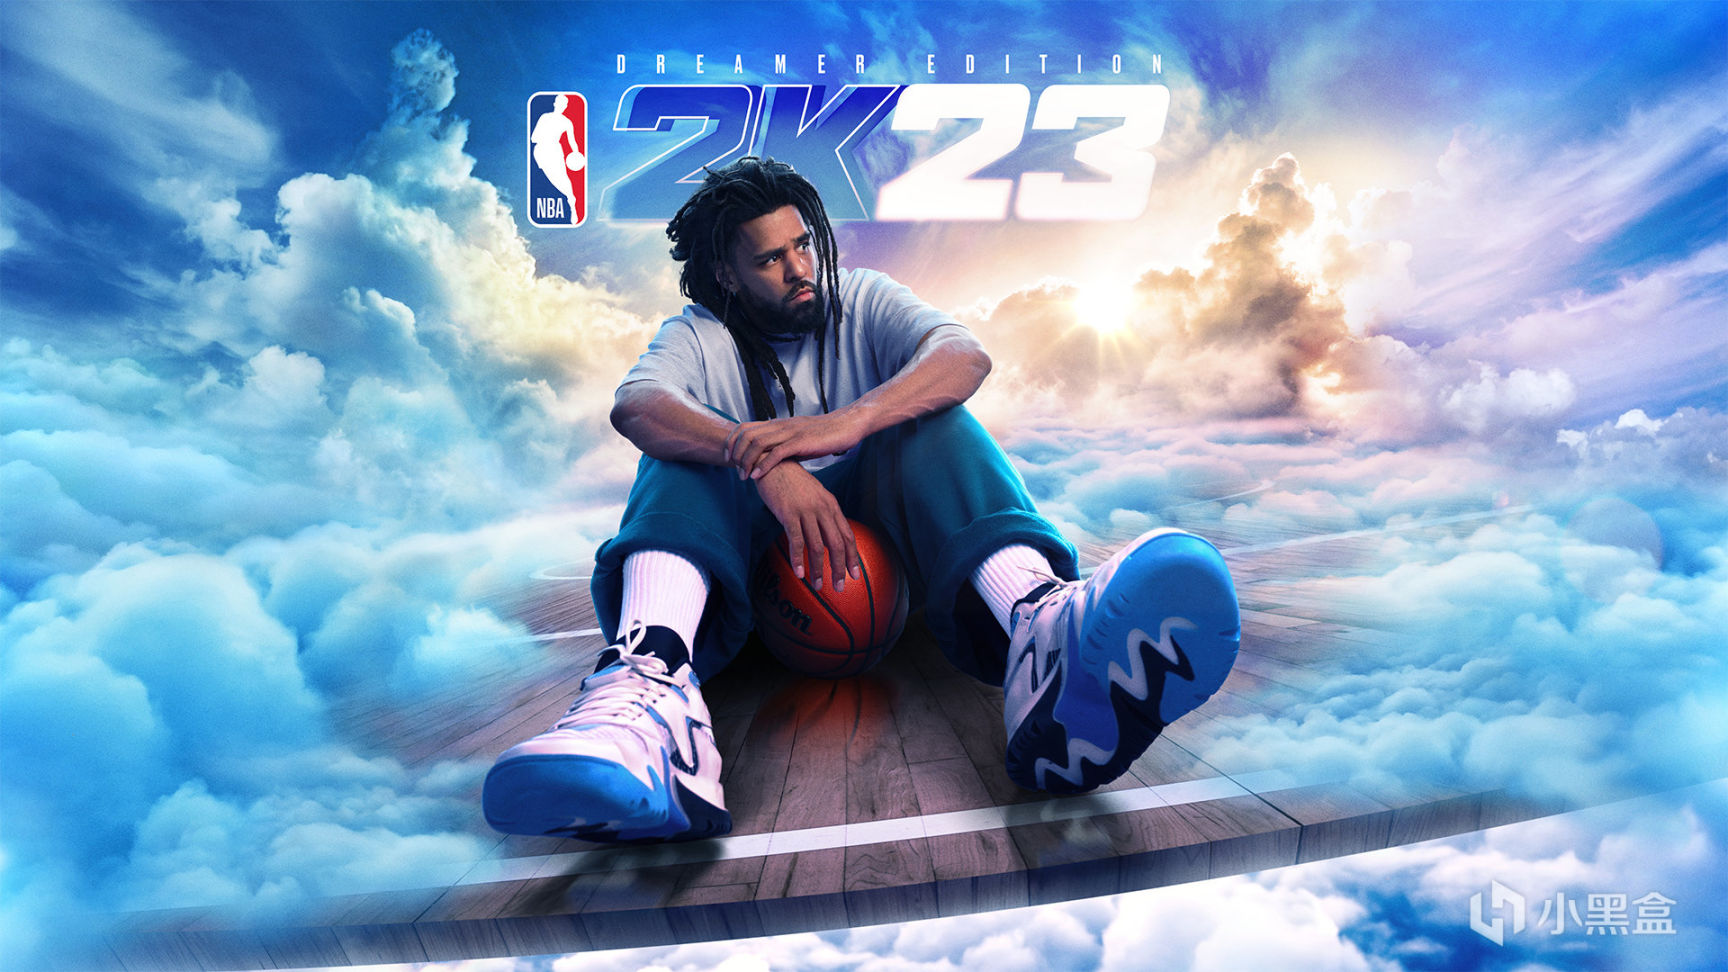 【PC游戏】NBA2K23以全新的体验 和独家封面 庆祝音乐和篮球的跨界合作-第1张